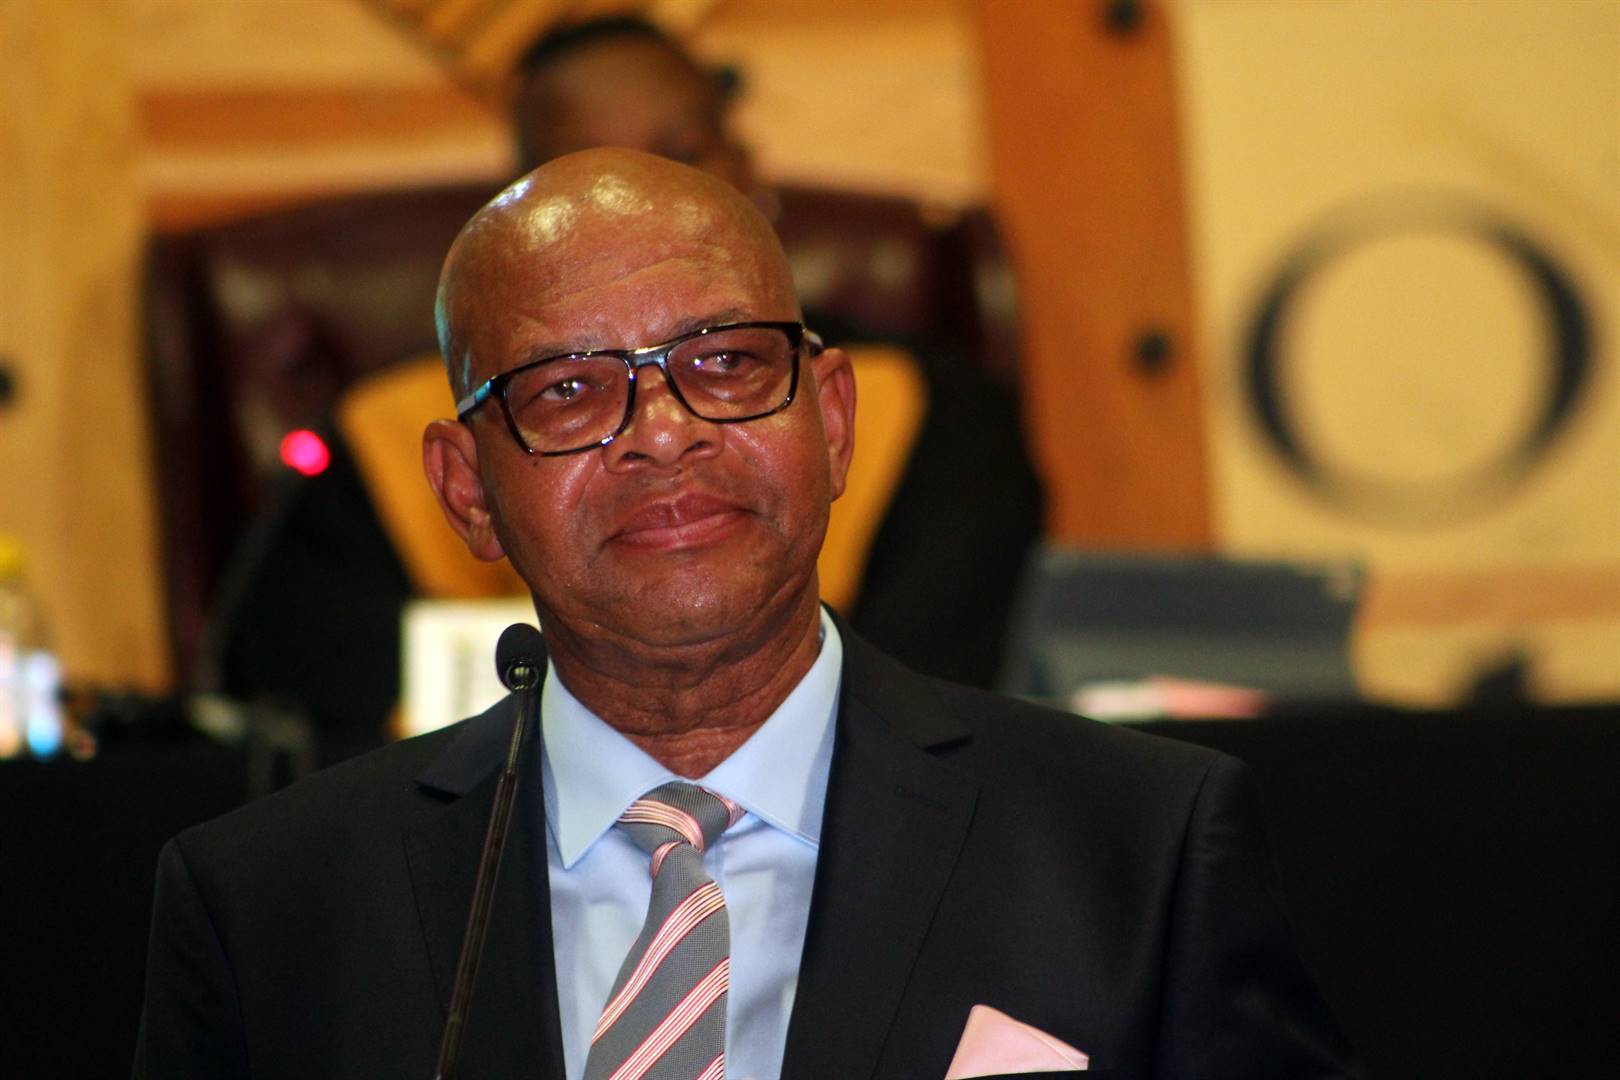 Mathabatha has reconfigured his executive council to exert influence on his challenger Dickson Masemola and Polly Boshielo. Photo: Daily Sun